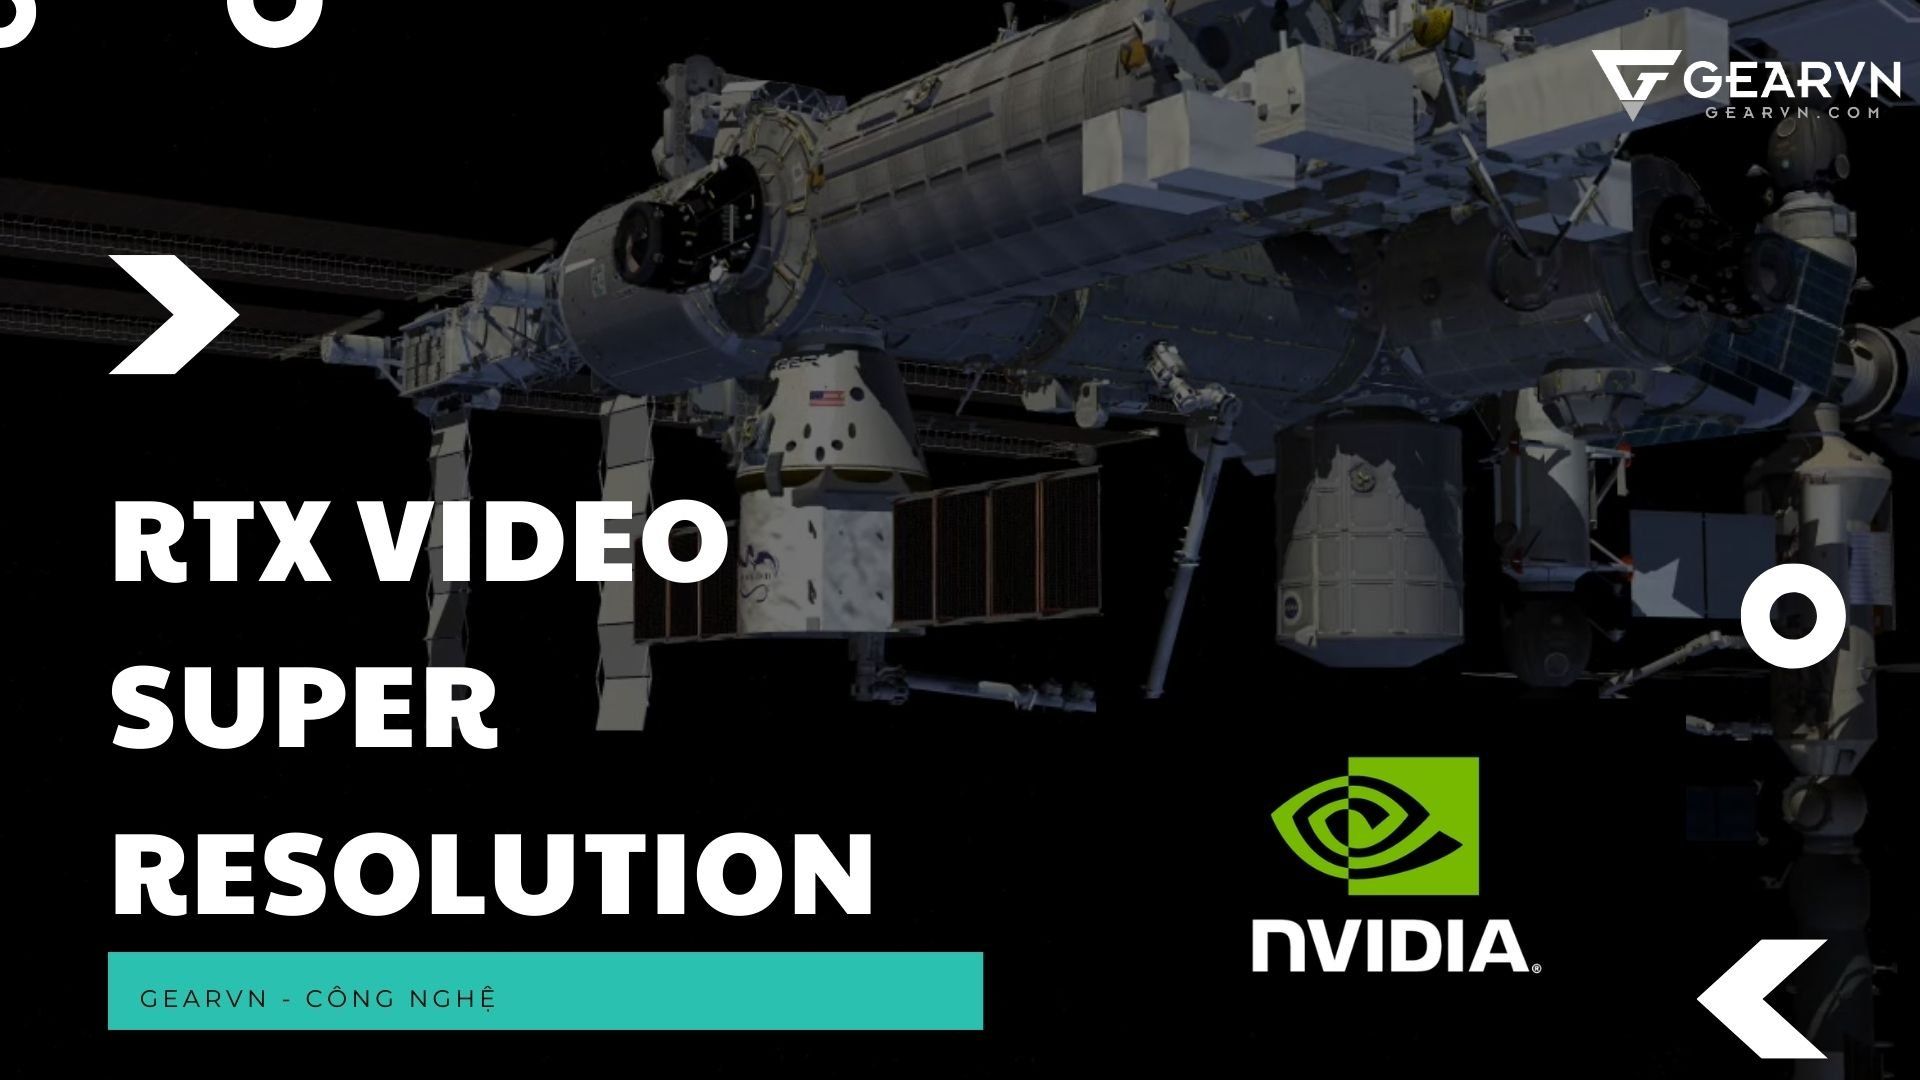 NVIDIA chính thức ra mắt công nghệ RTX Video Super Resolution